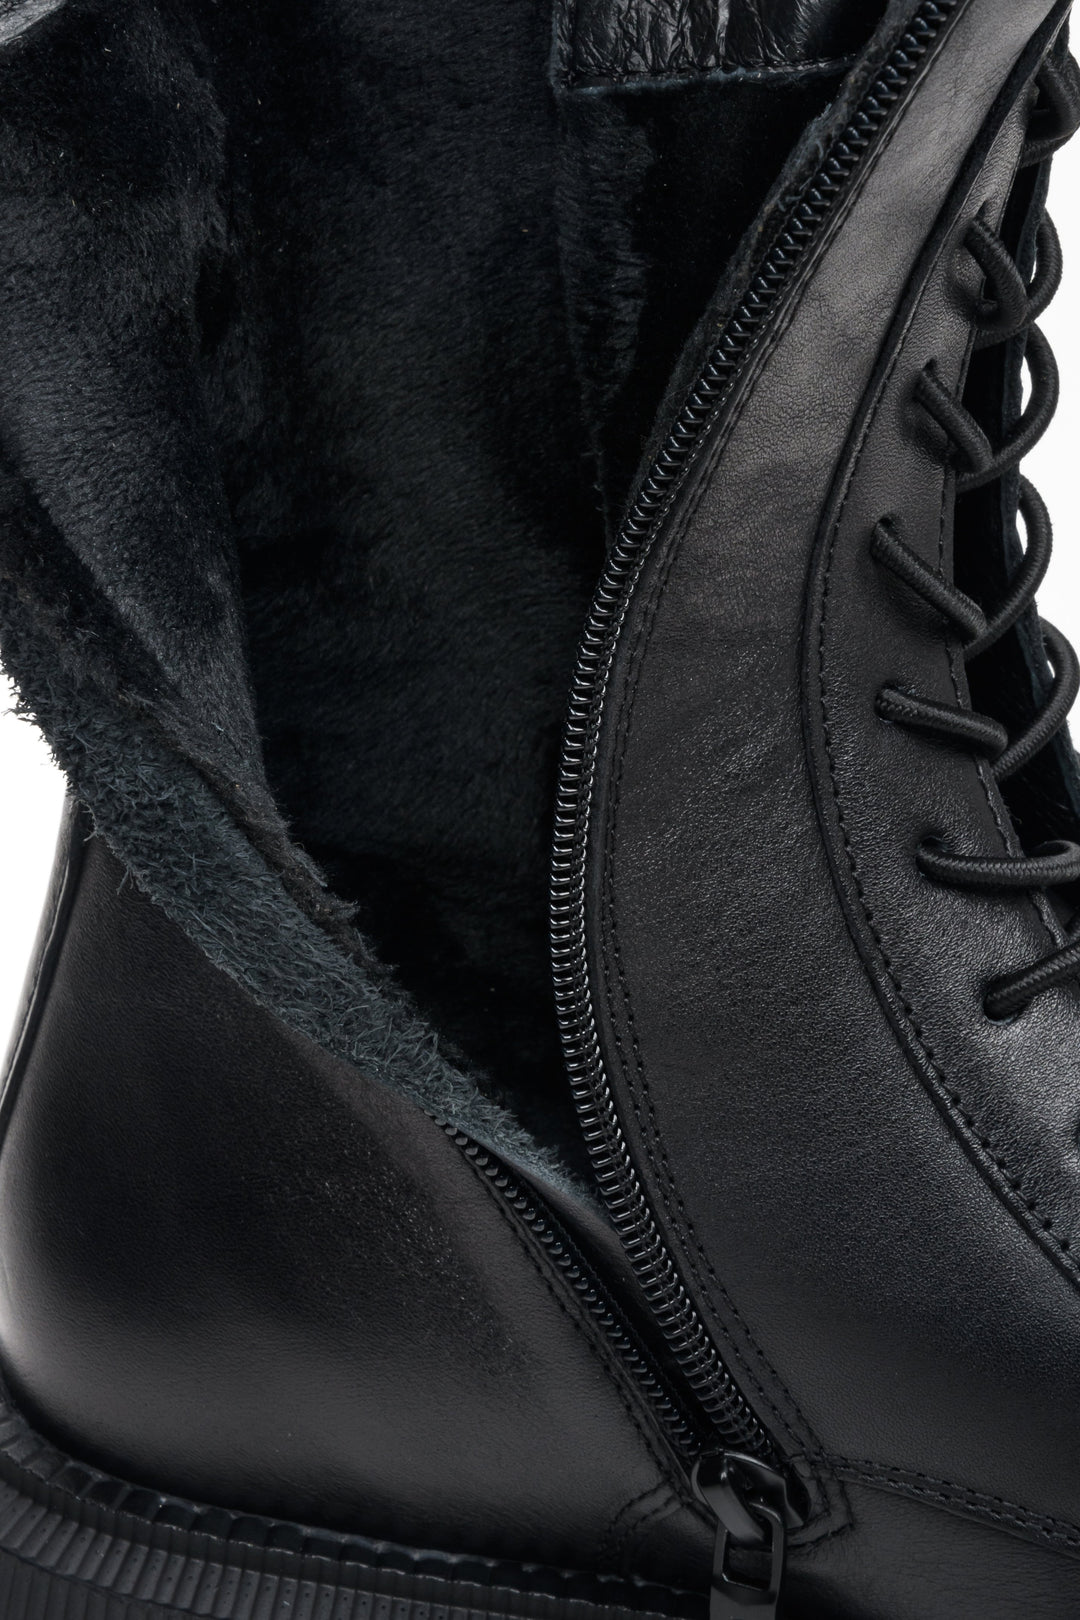 Botki damskie wysokie ze skóry naturalnej w kolorze czarnym Estro - zbliżenie na wypełnienie buta.